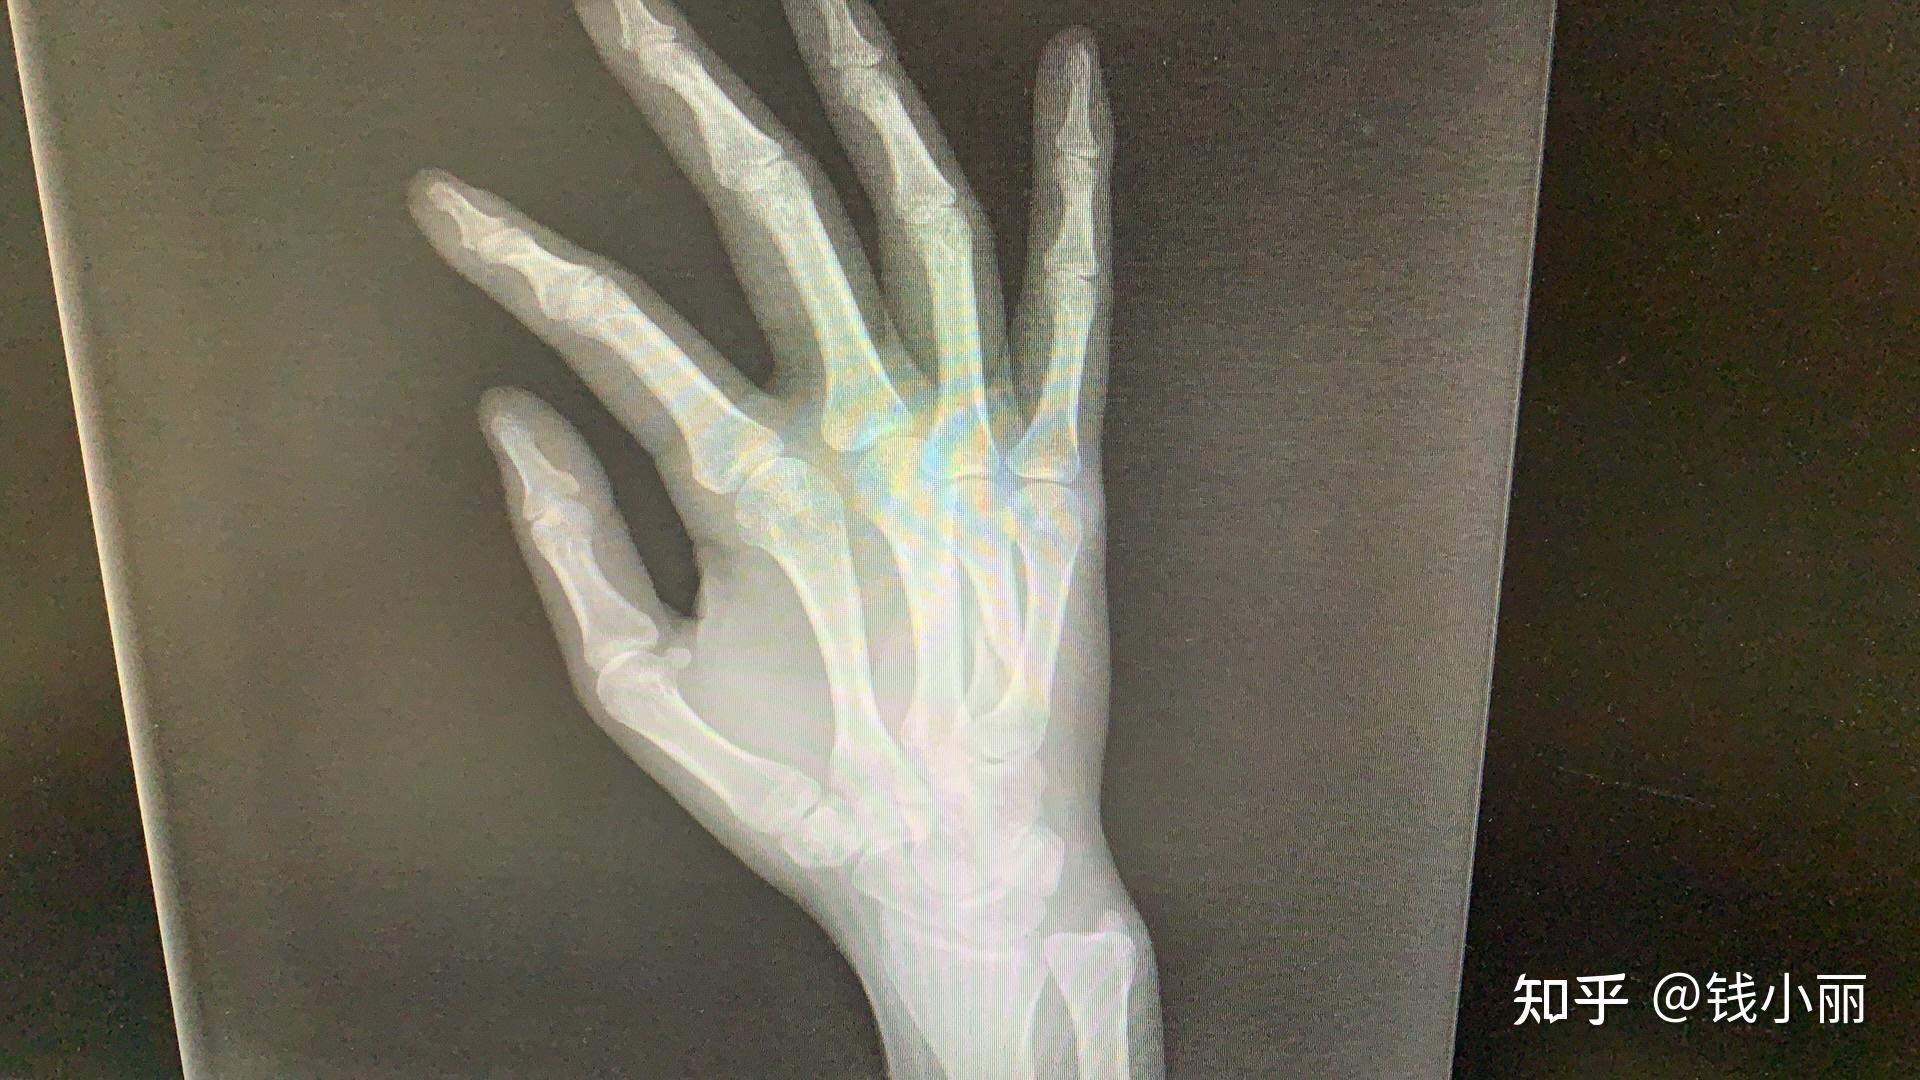 右手第5掌骨骨折一例 - 病例中心(诊疗助手) - 爱爱医医学网